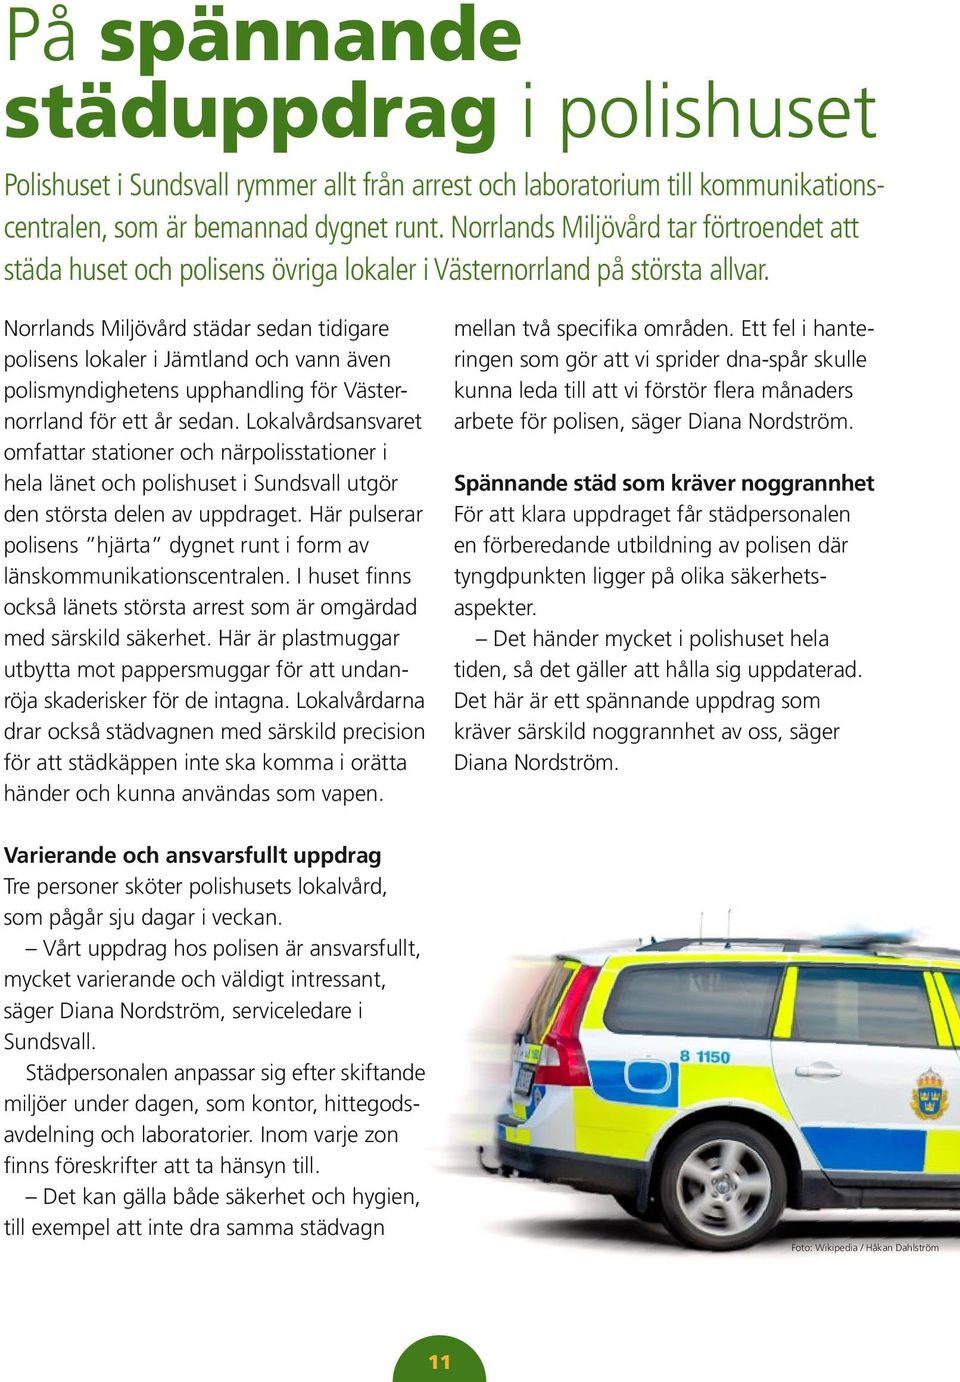 Norrlands Miljövård städar sedan tidigare polisens lokaler i Jämtland och vann även polismyndighetens upphandling för Västernorrland för ett år sedan.